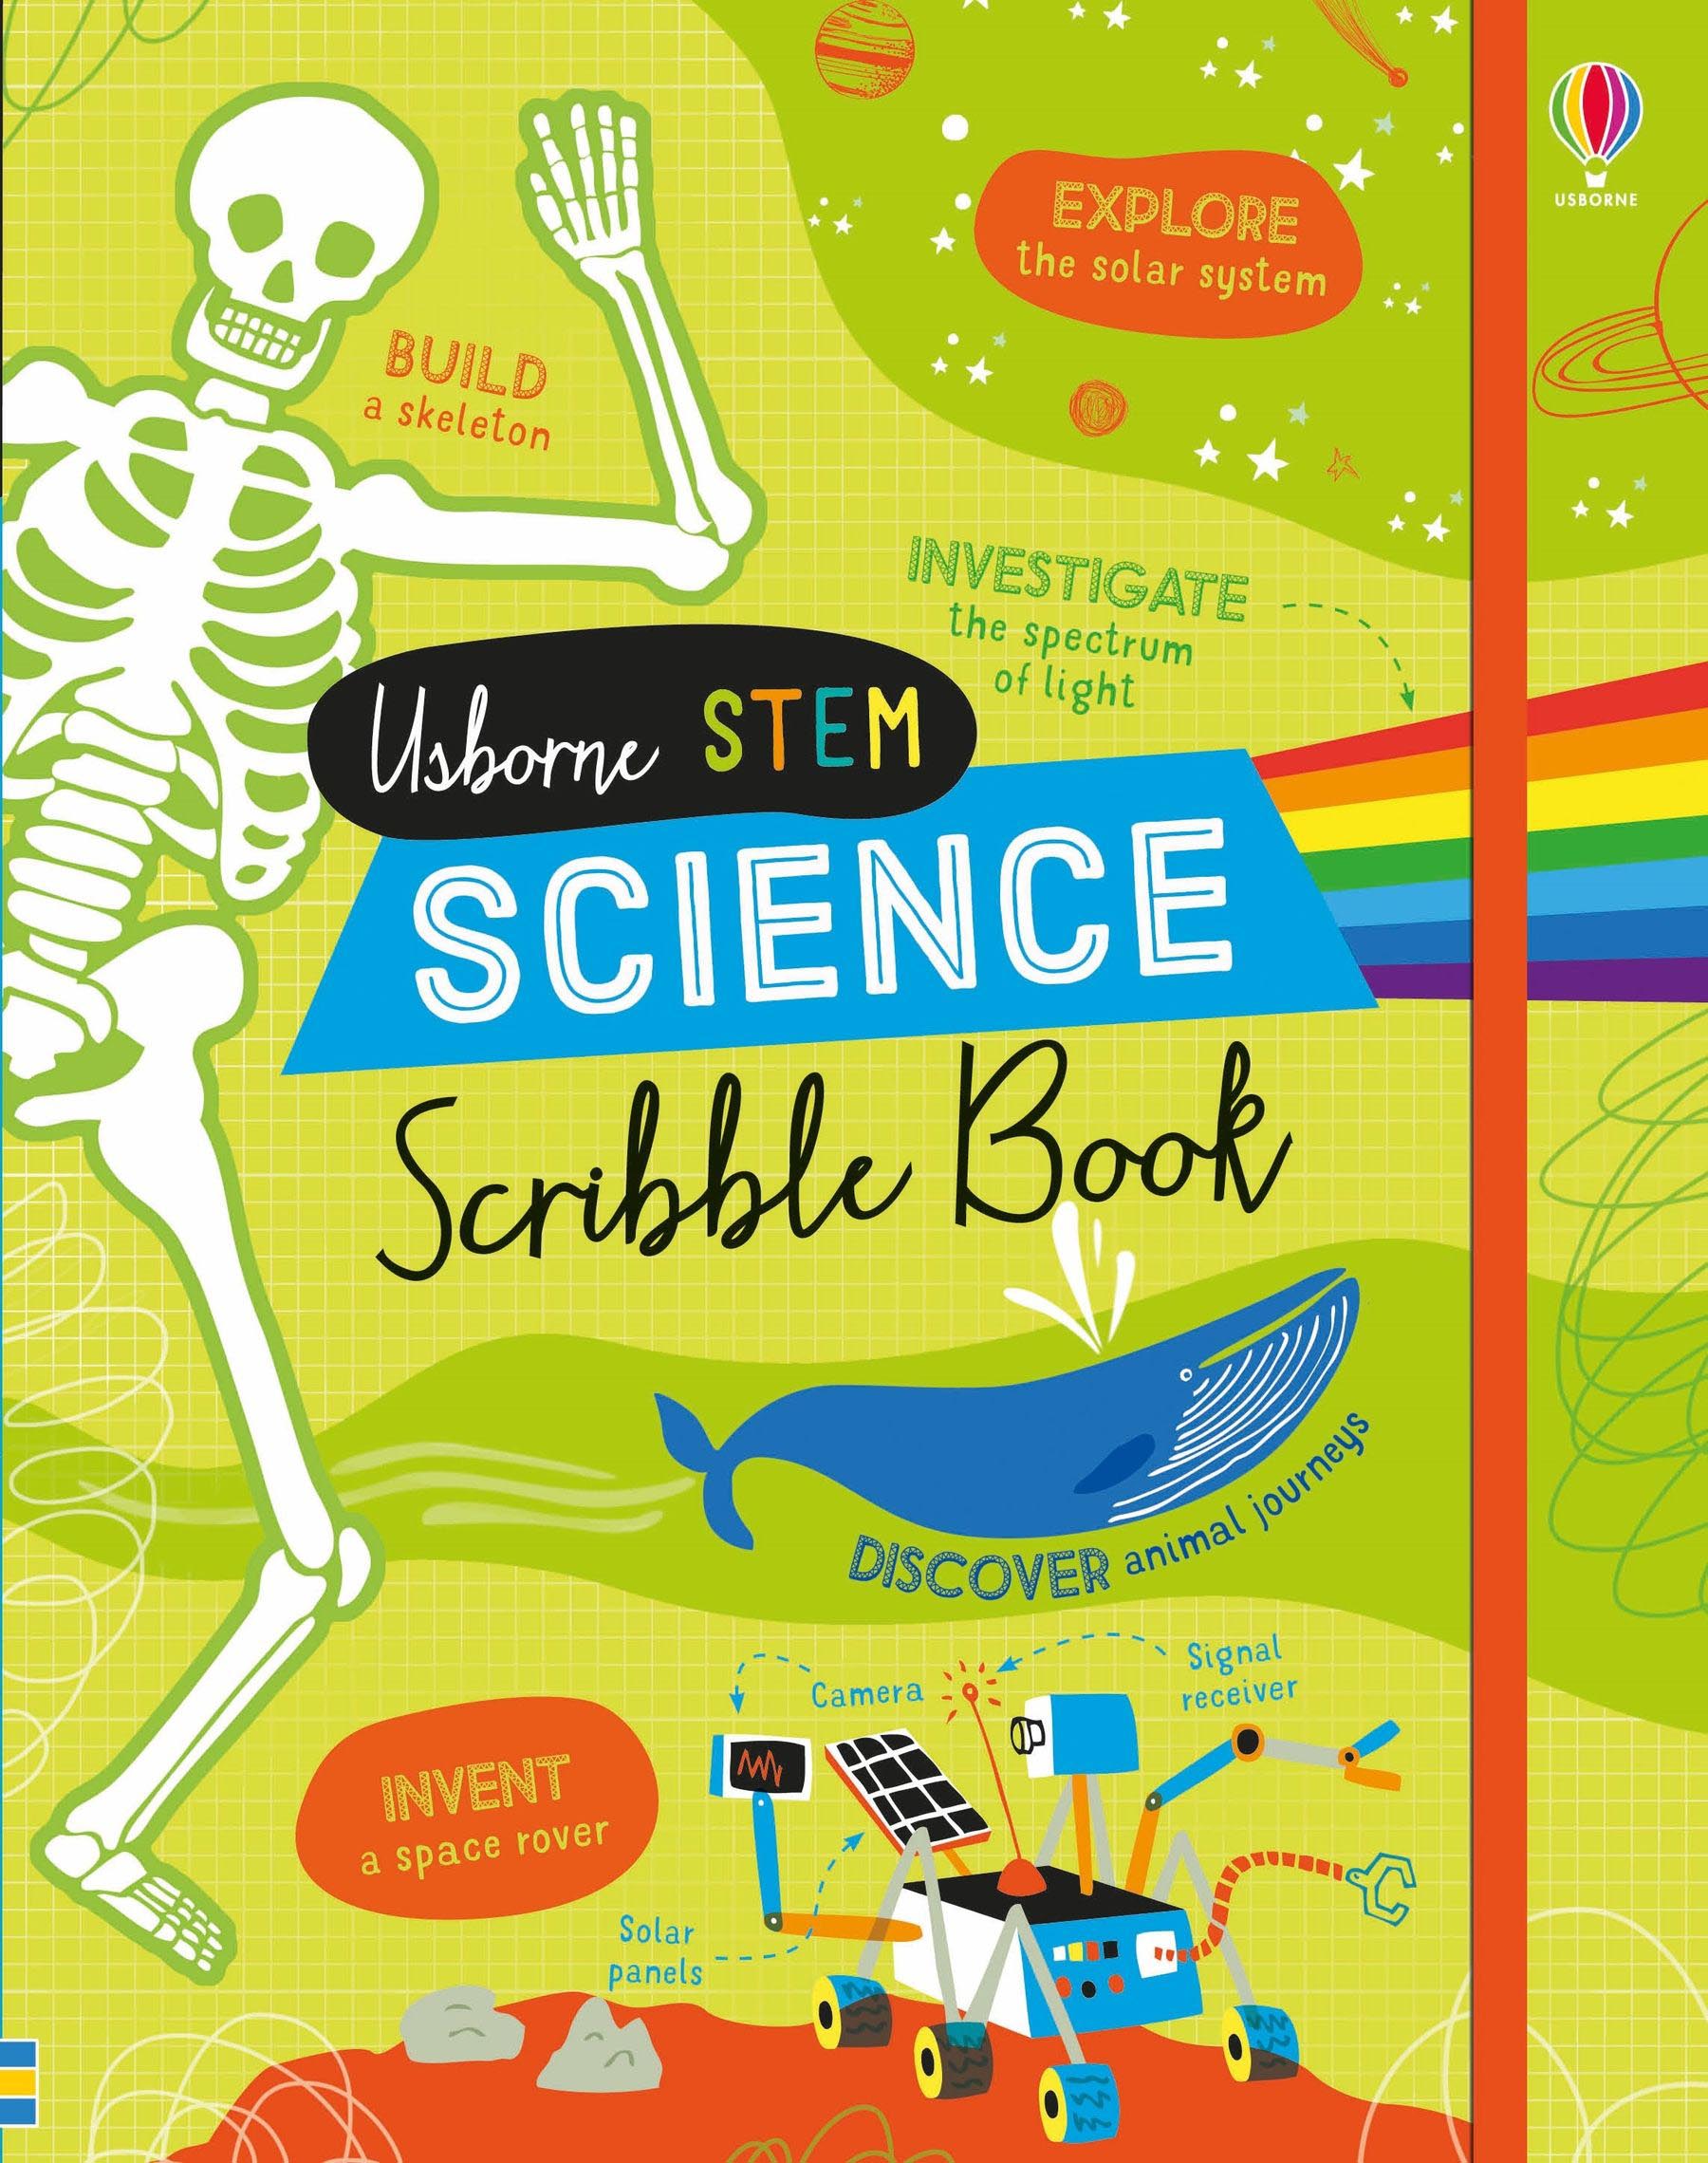 Usborne STEM Science Scribble Book